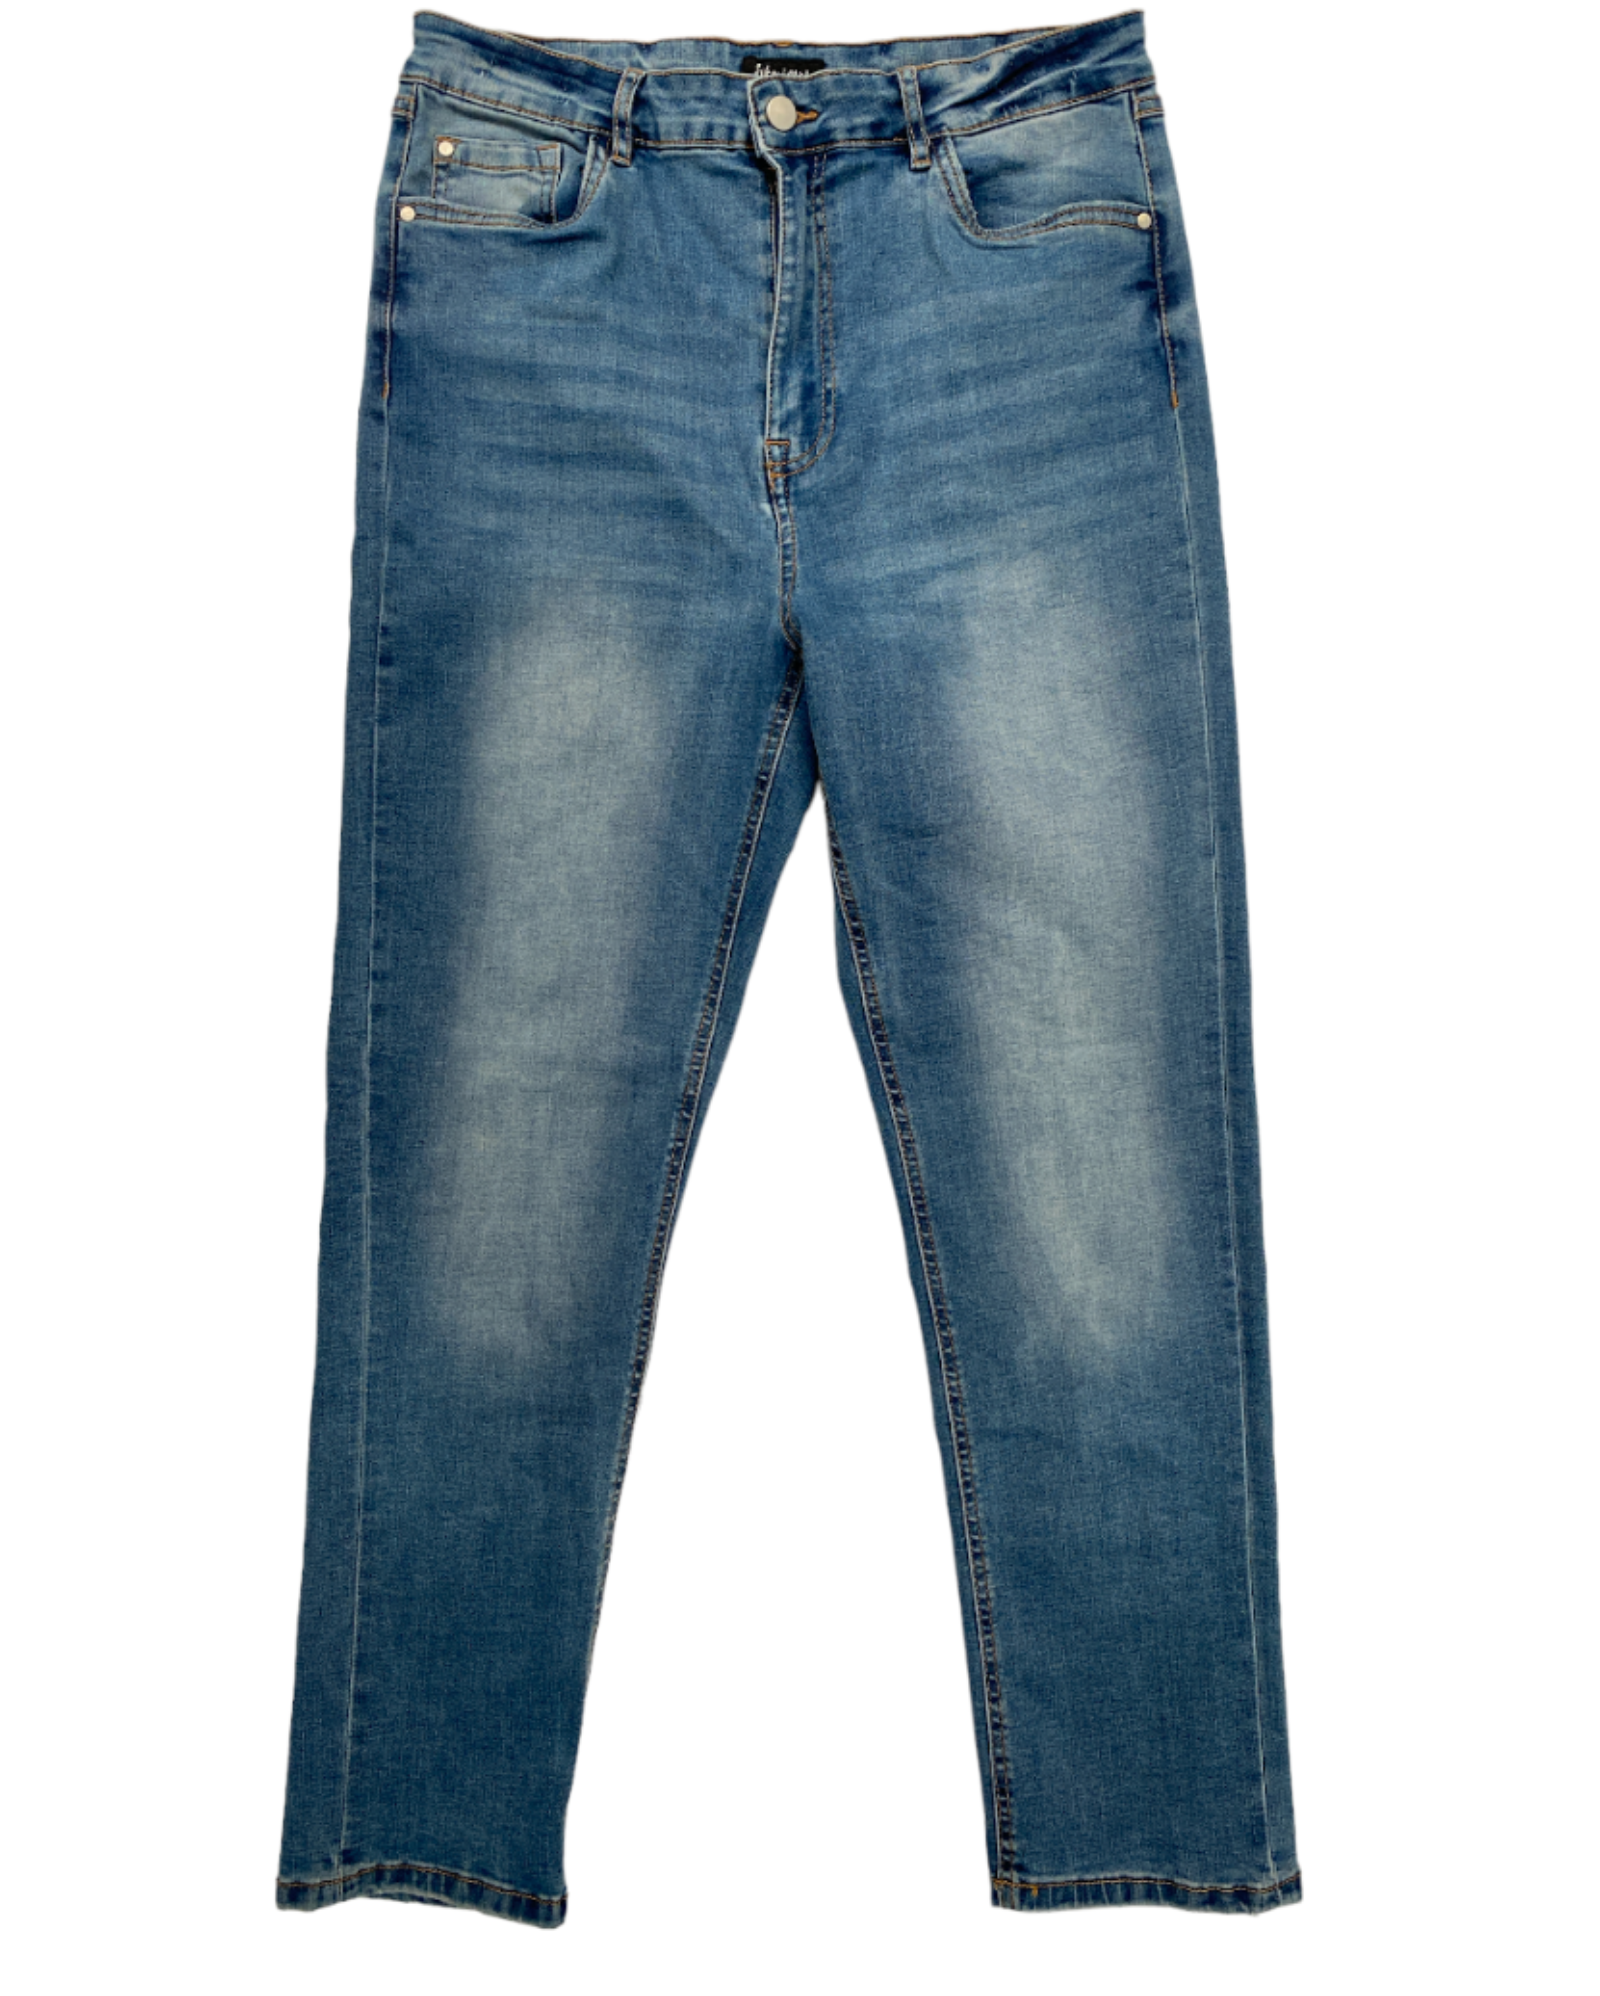 Jeans Rectos Suko jeans 